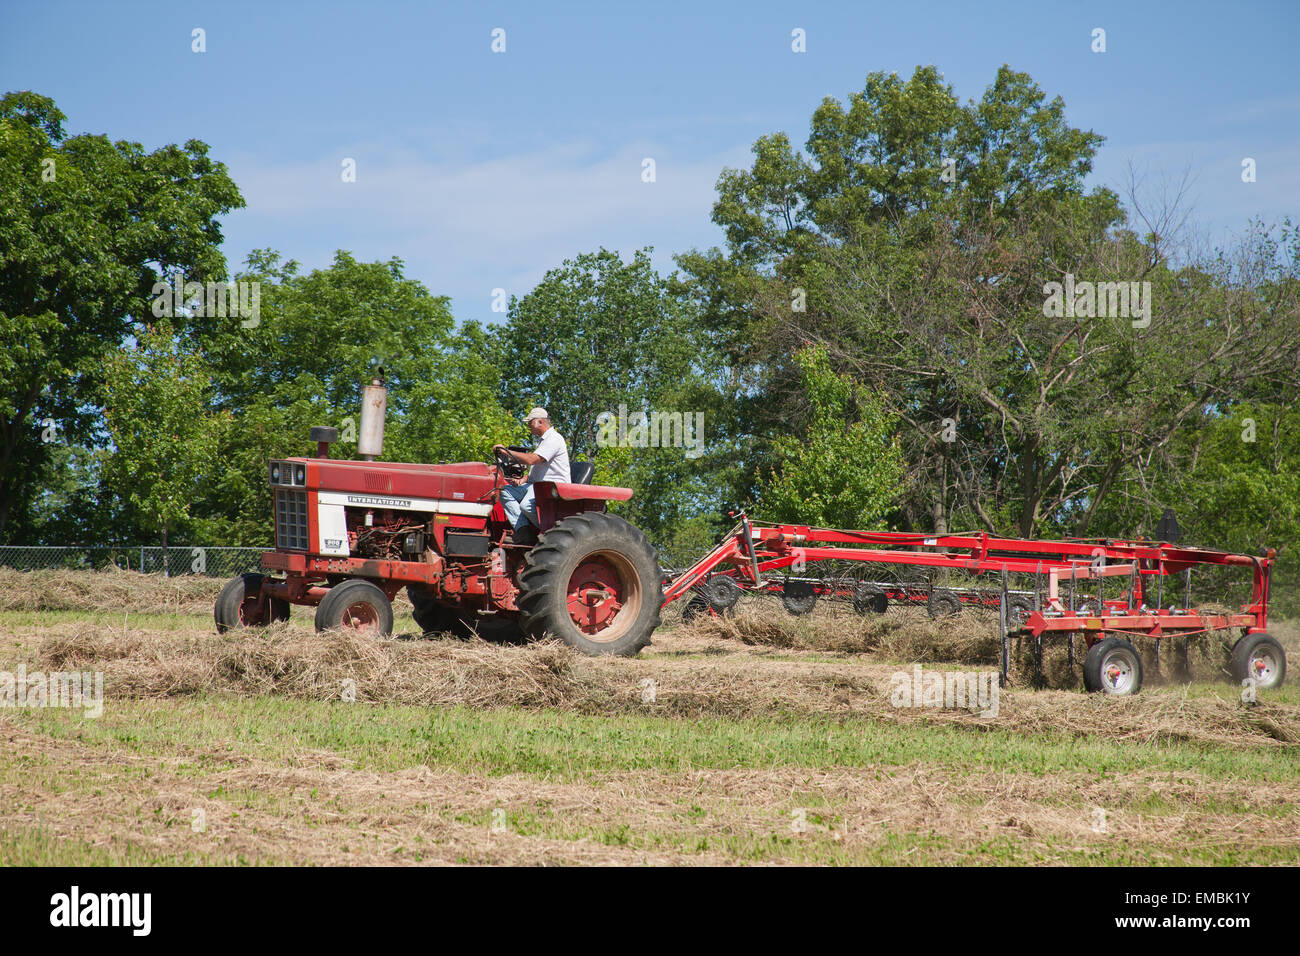 Mann Auf International Harvester Farmall Traktor Ziehen Ein Heu Rechen Rechen Das Heu In Einem Feld In Der Nahe Von Galena Illinois Usa Stockfotografie Alamy